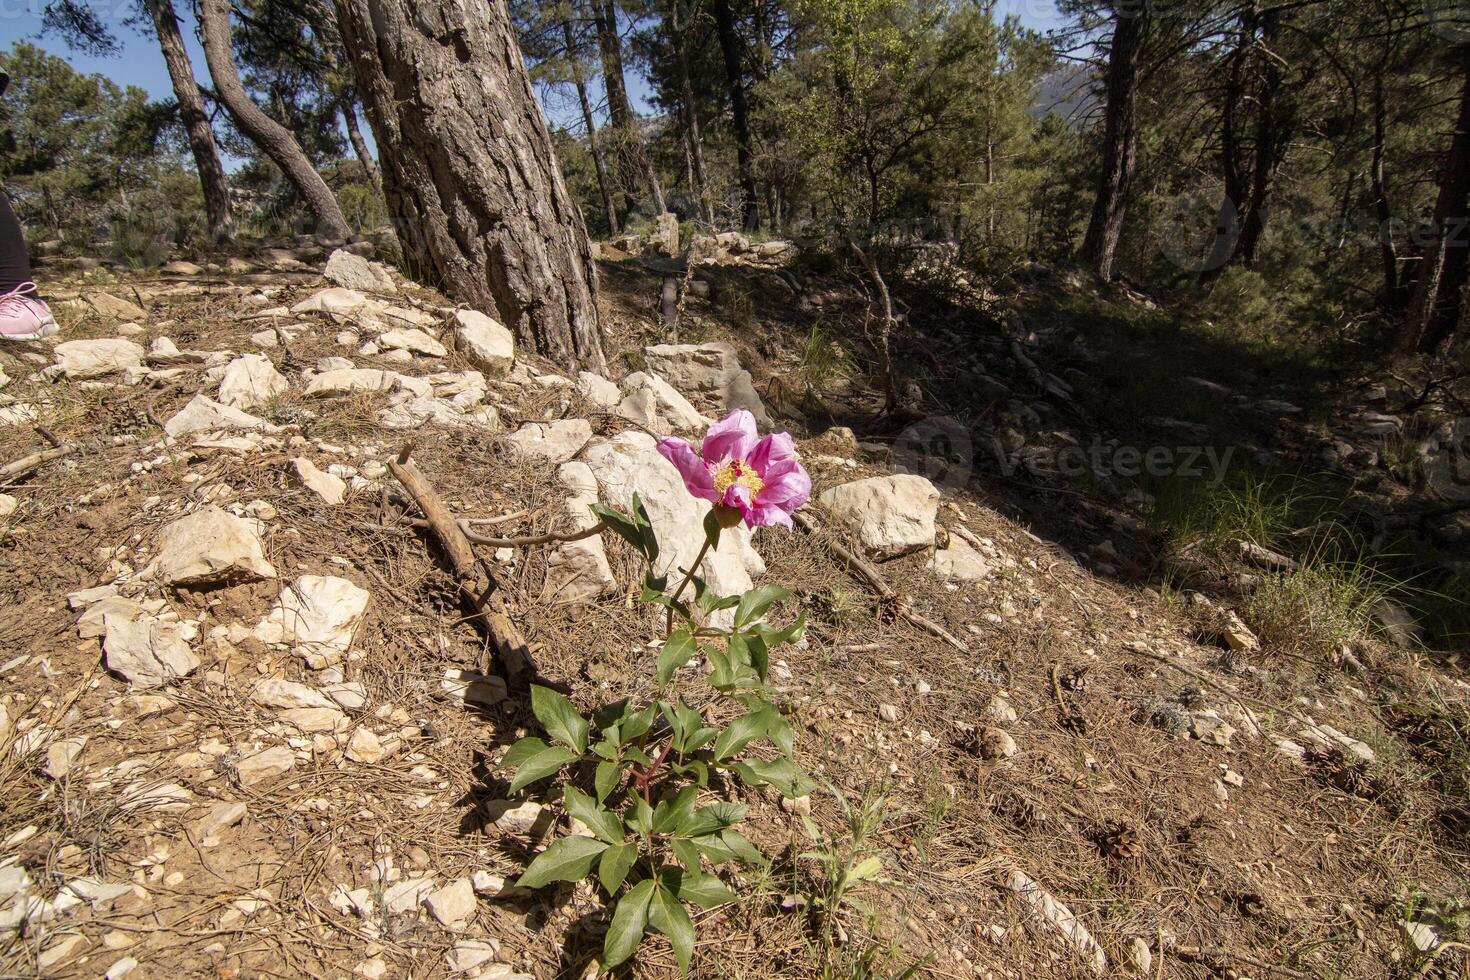 ziemlich Fuchsie wild Blume im das schön Natur von das Sierra de Cazorla, jaen, Spanien. foto